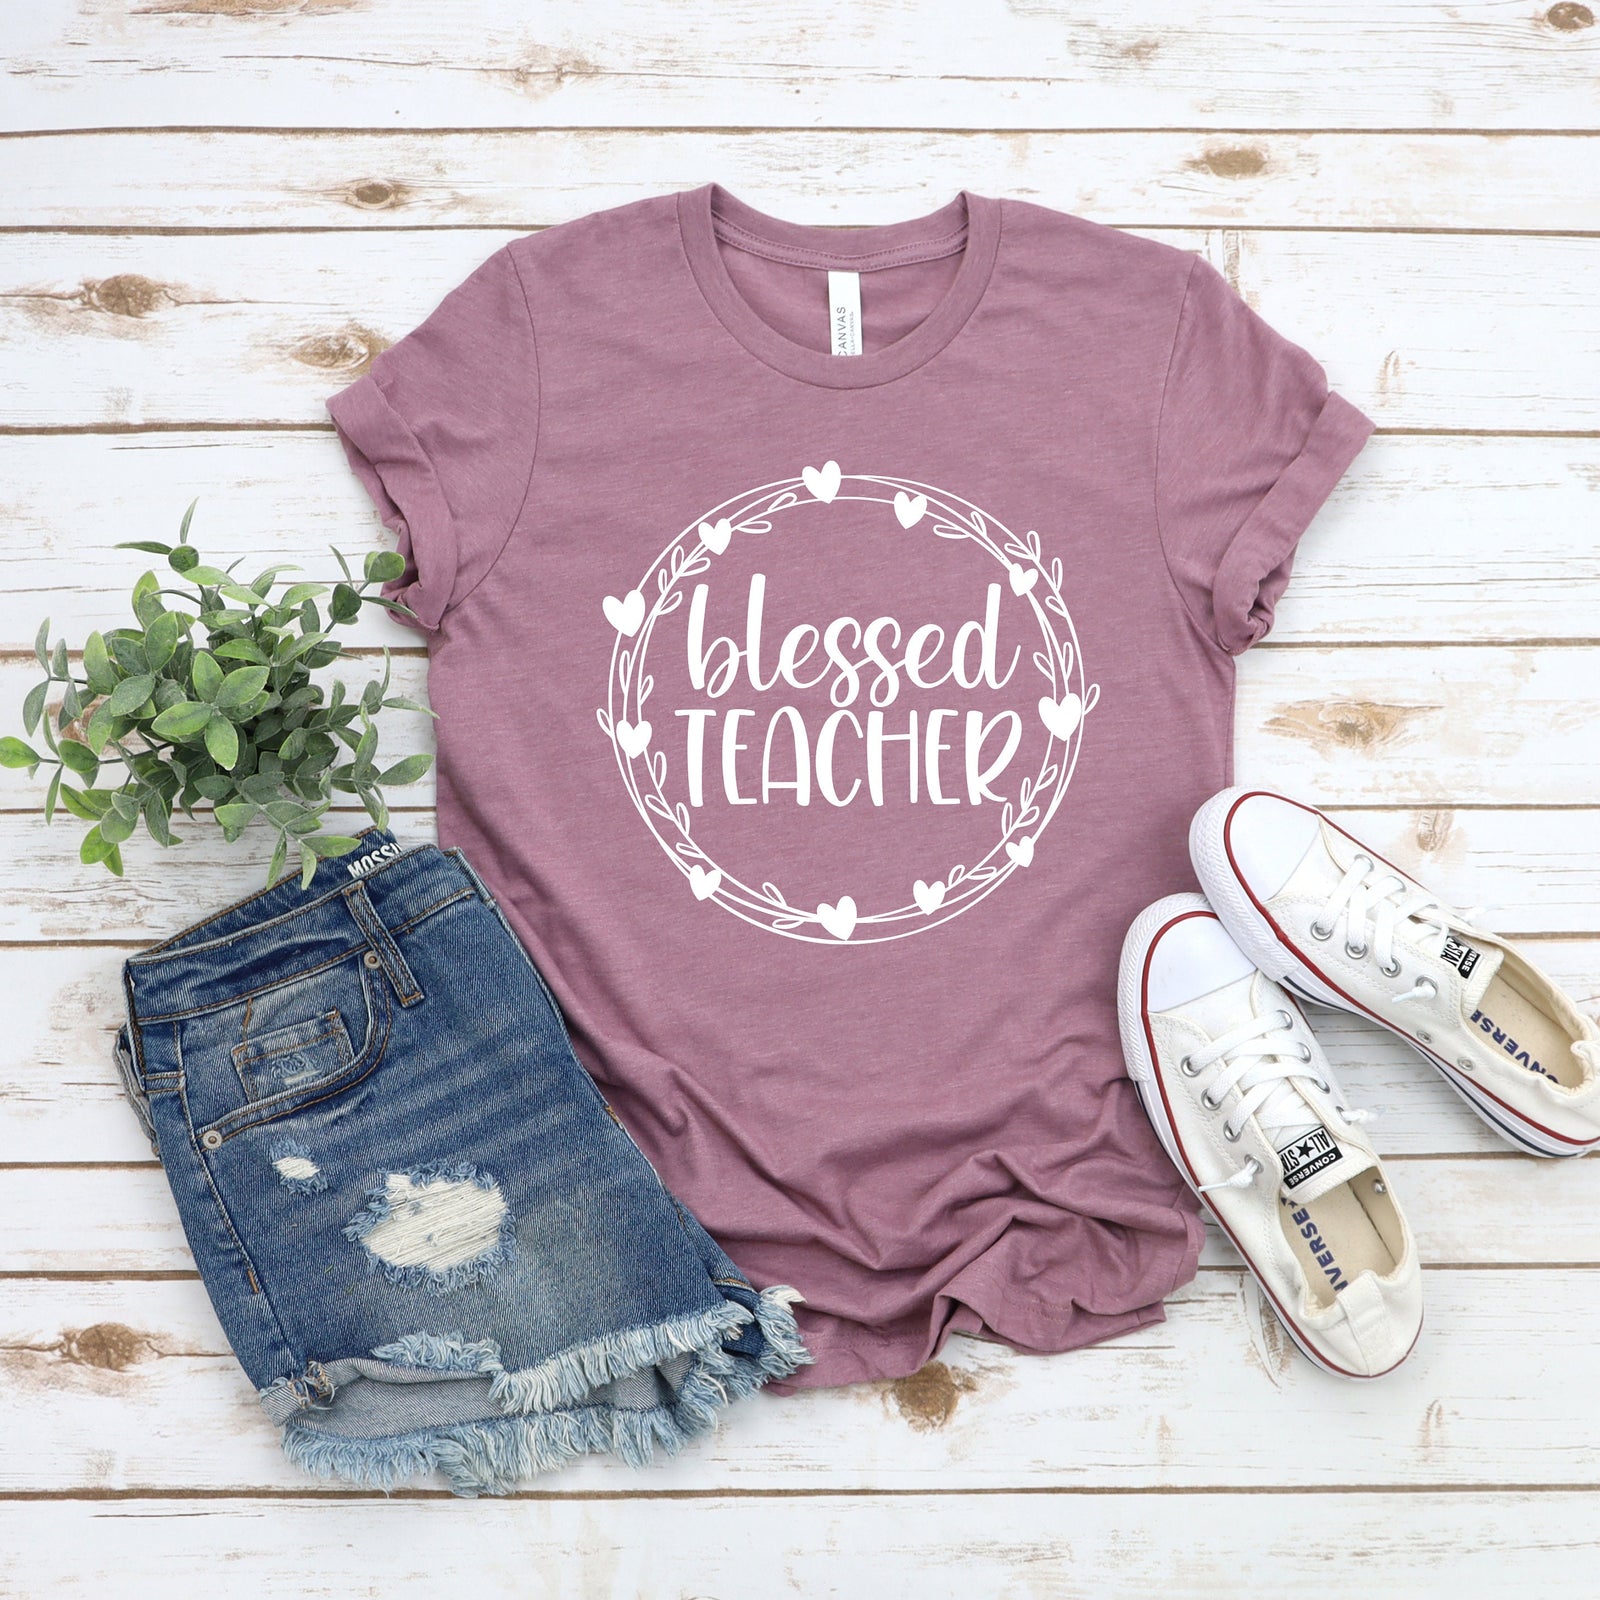 Blessed Teacher T Shirt - Teacher Shirts - Favorite Teacher T Shirt